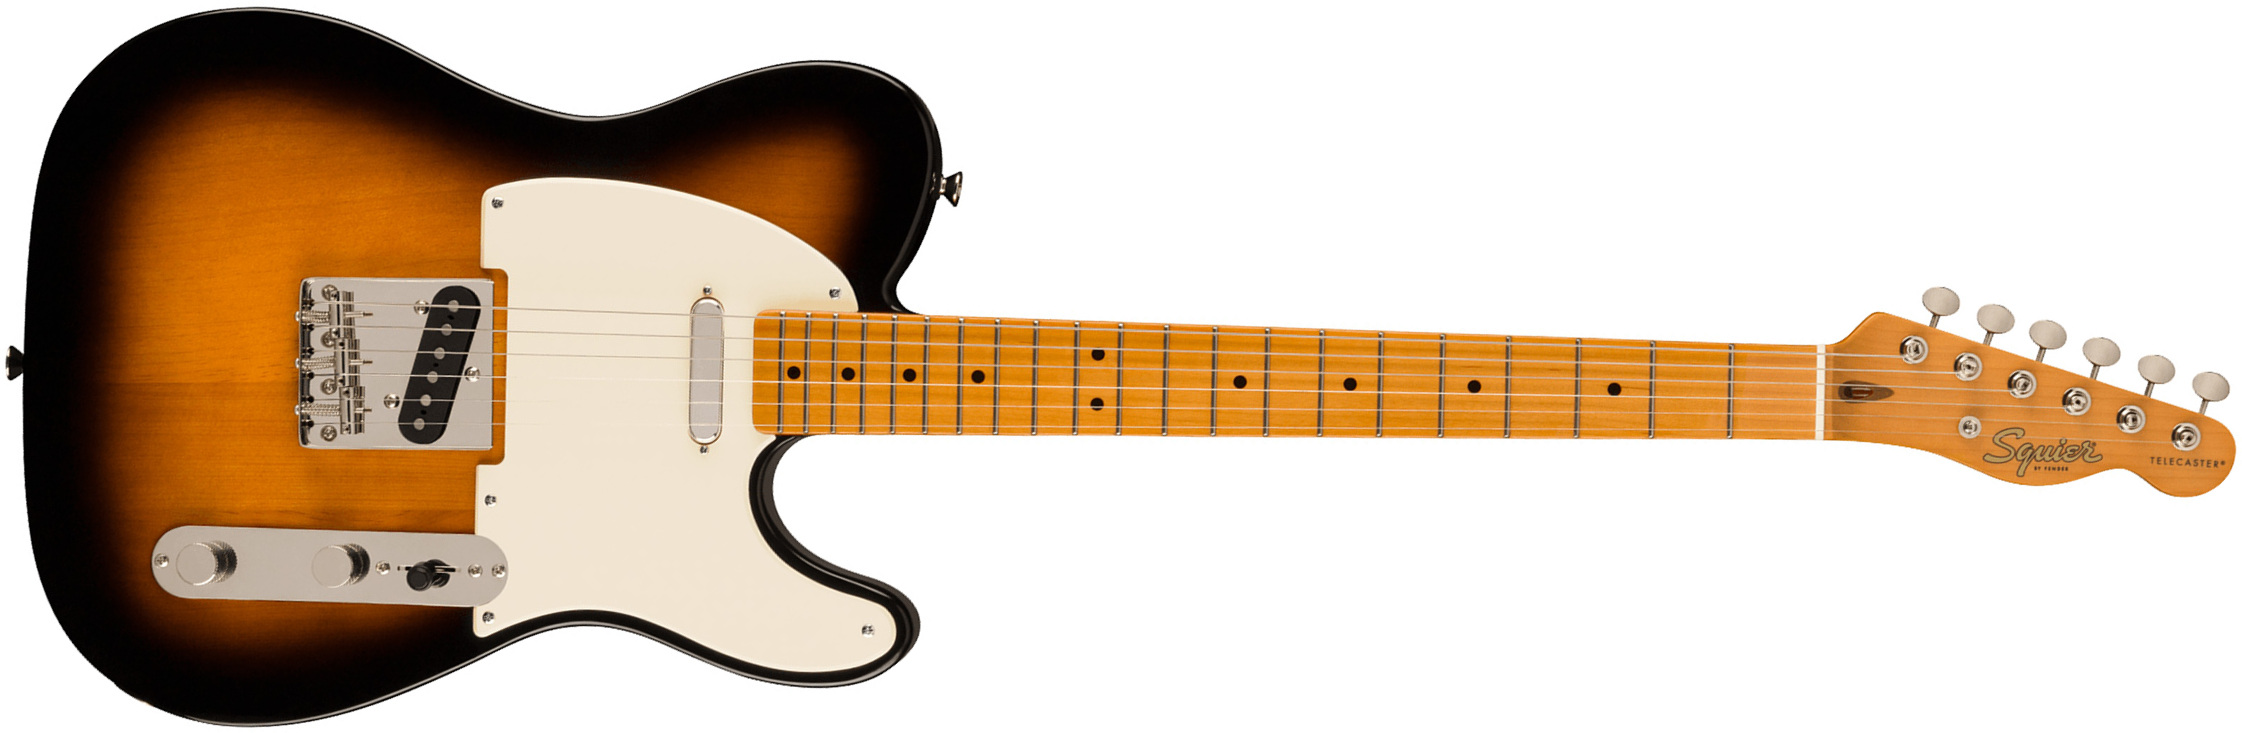 Squier Tele '50s Parchment Pickguard Classic Vibe Fsr 2s Ht Mn - 2-color Sunburst - Televorm elektrische gitaar - Main picture